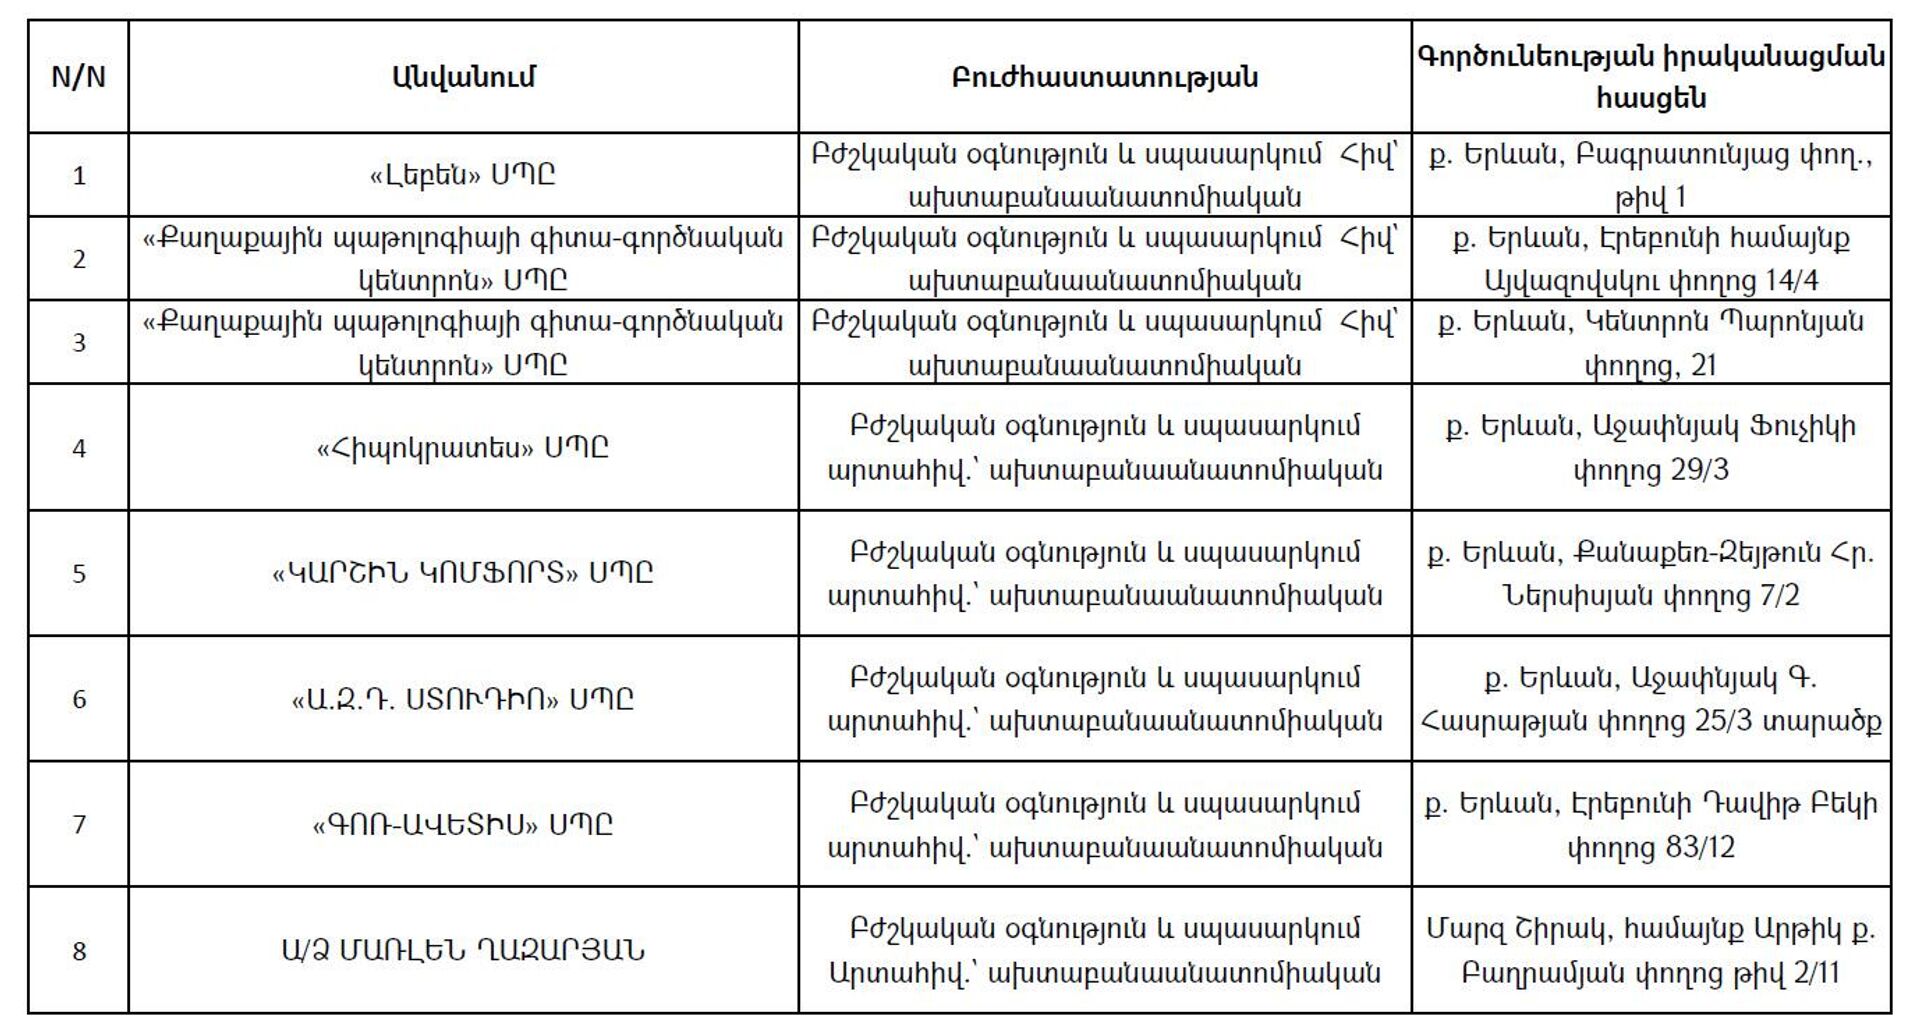 Список частных моргов, предоставленных министерством здравоохранения РА по состоянию на 14 марта 2022 года - Sputnik Армения, 1920, 15.04.2022